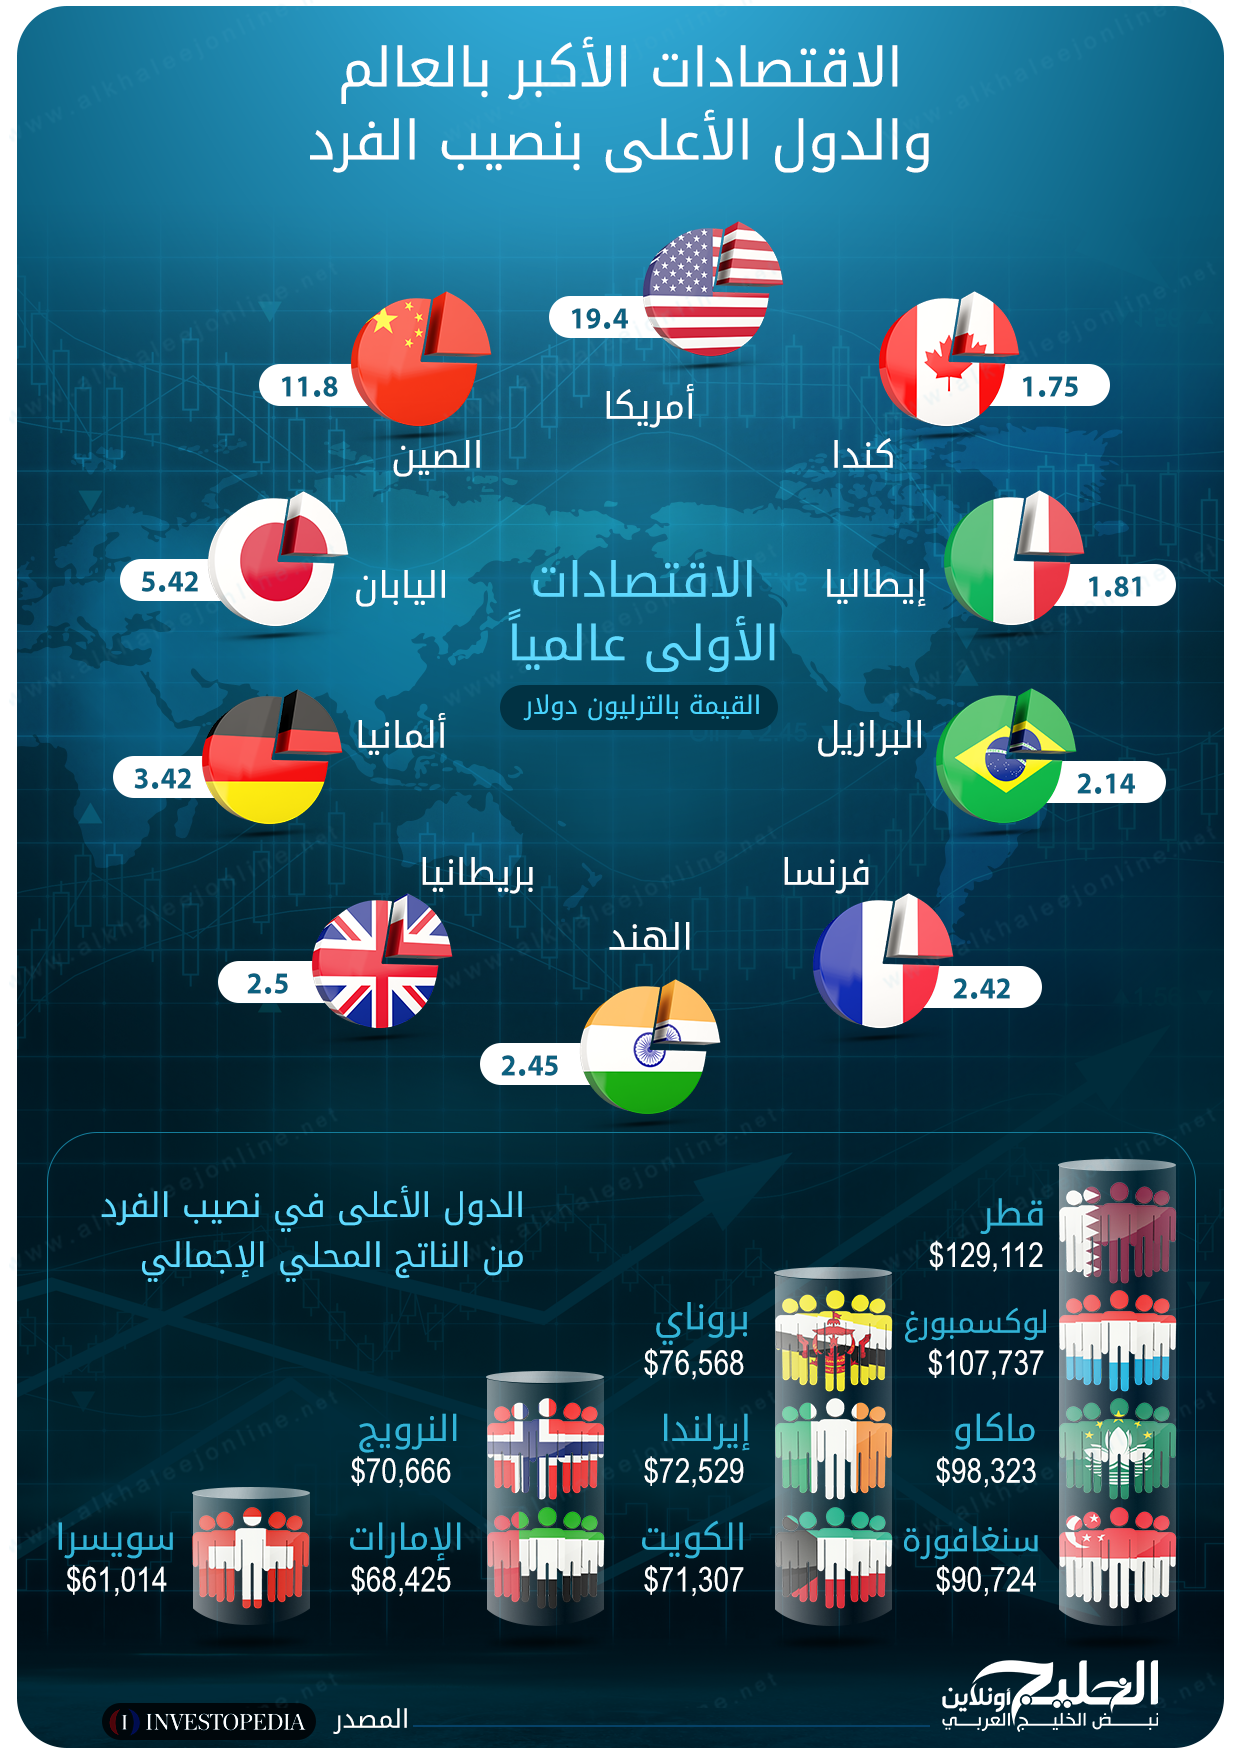 بالإنفوغراف تعر ف على أقوى 10 اقتصادات بالعالم خلال 2018 الخليج